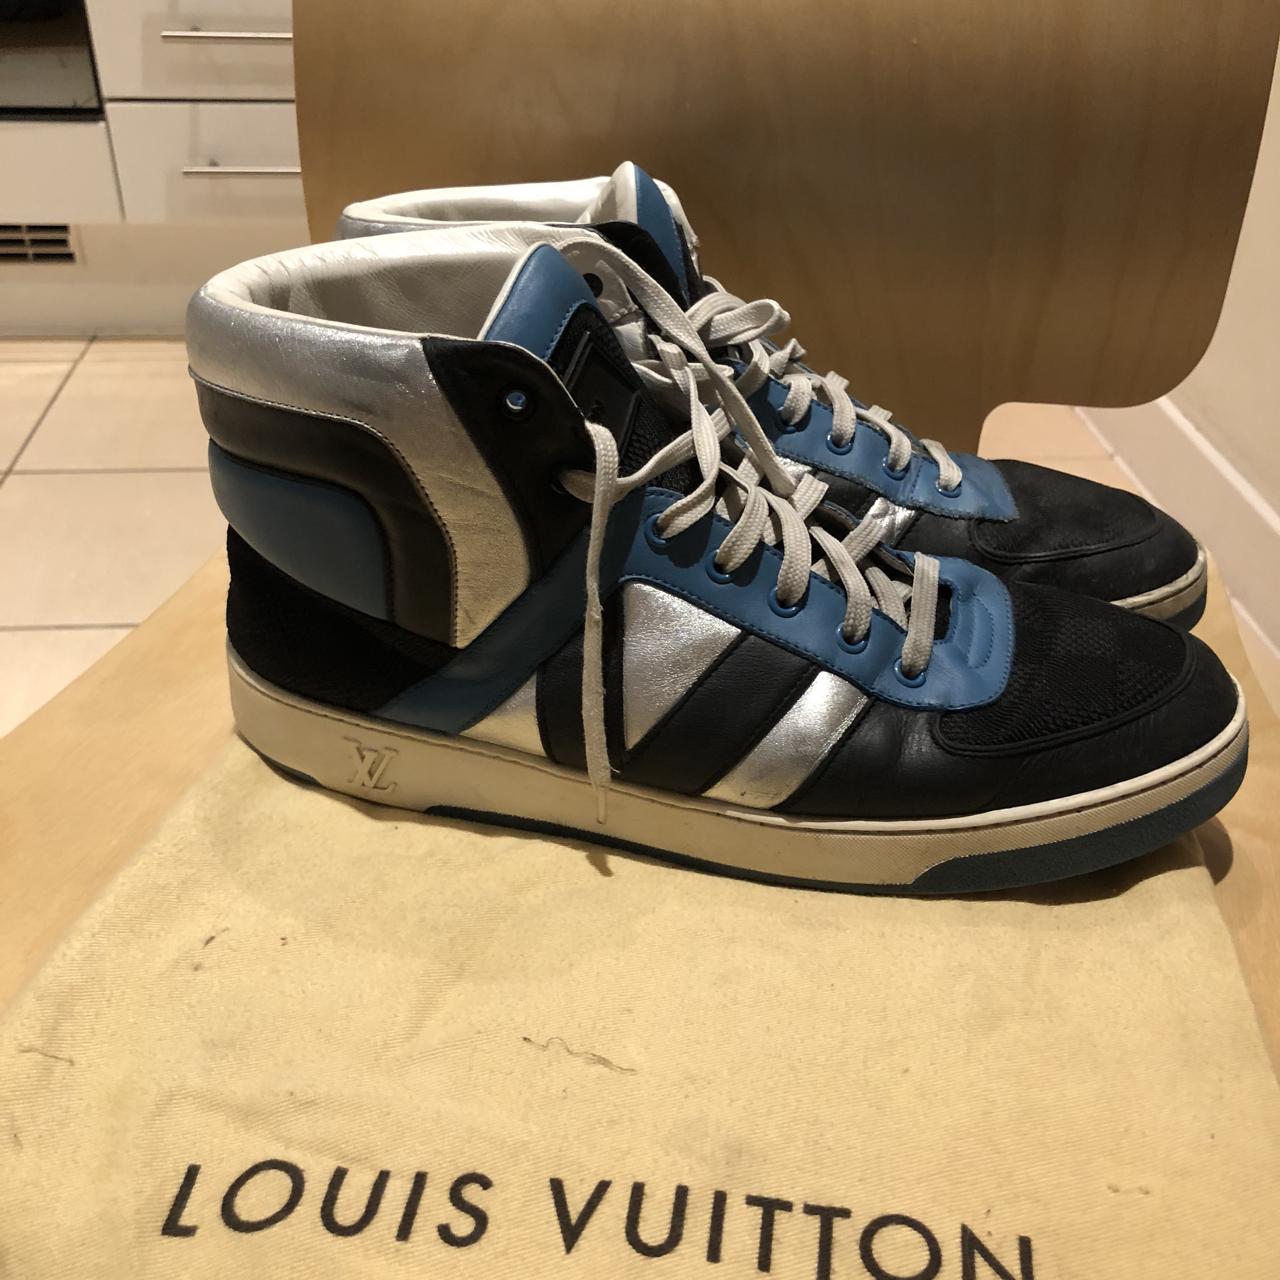 Men's Louis Vuitton Luxembourg Sneakers 100% - Depop